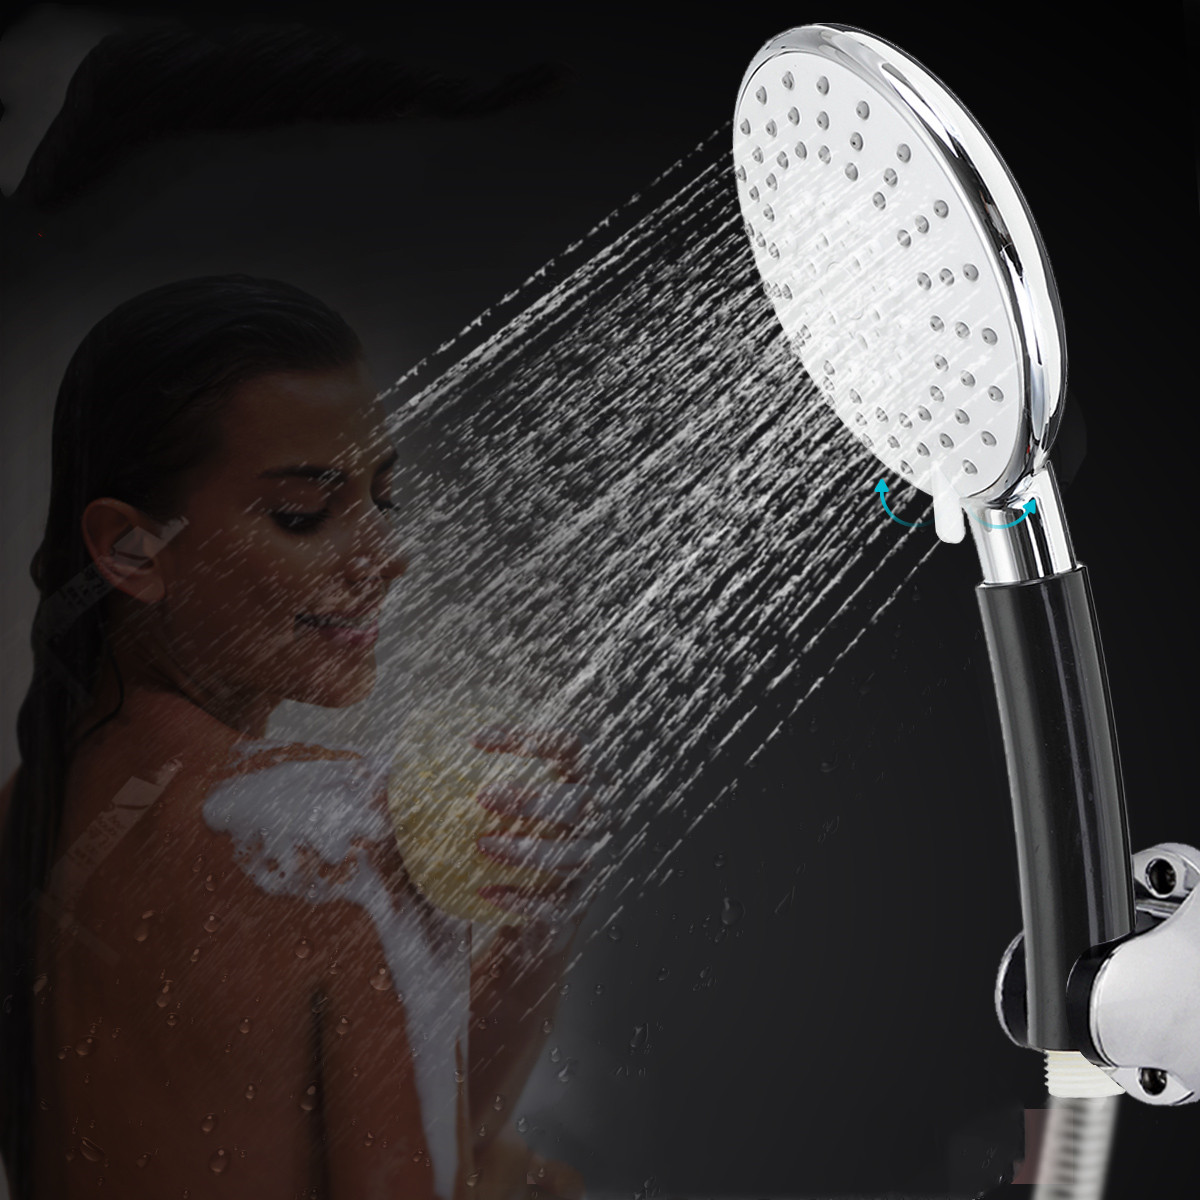 

5 Gear Adjustment ABS Shower Head Home Bathroom Round Shower Head